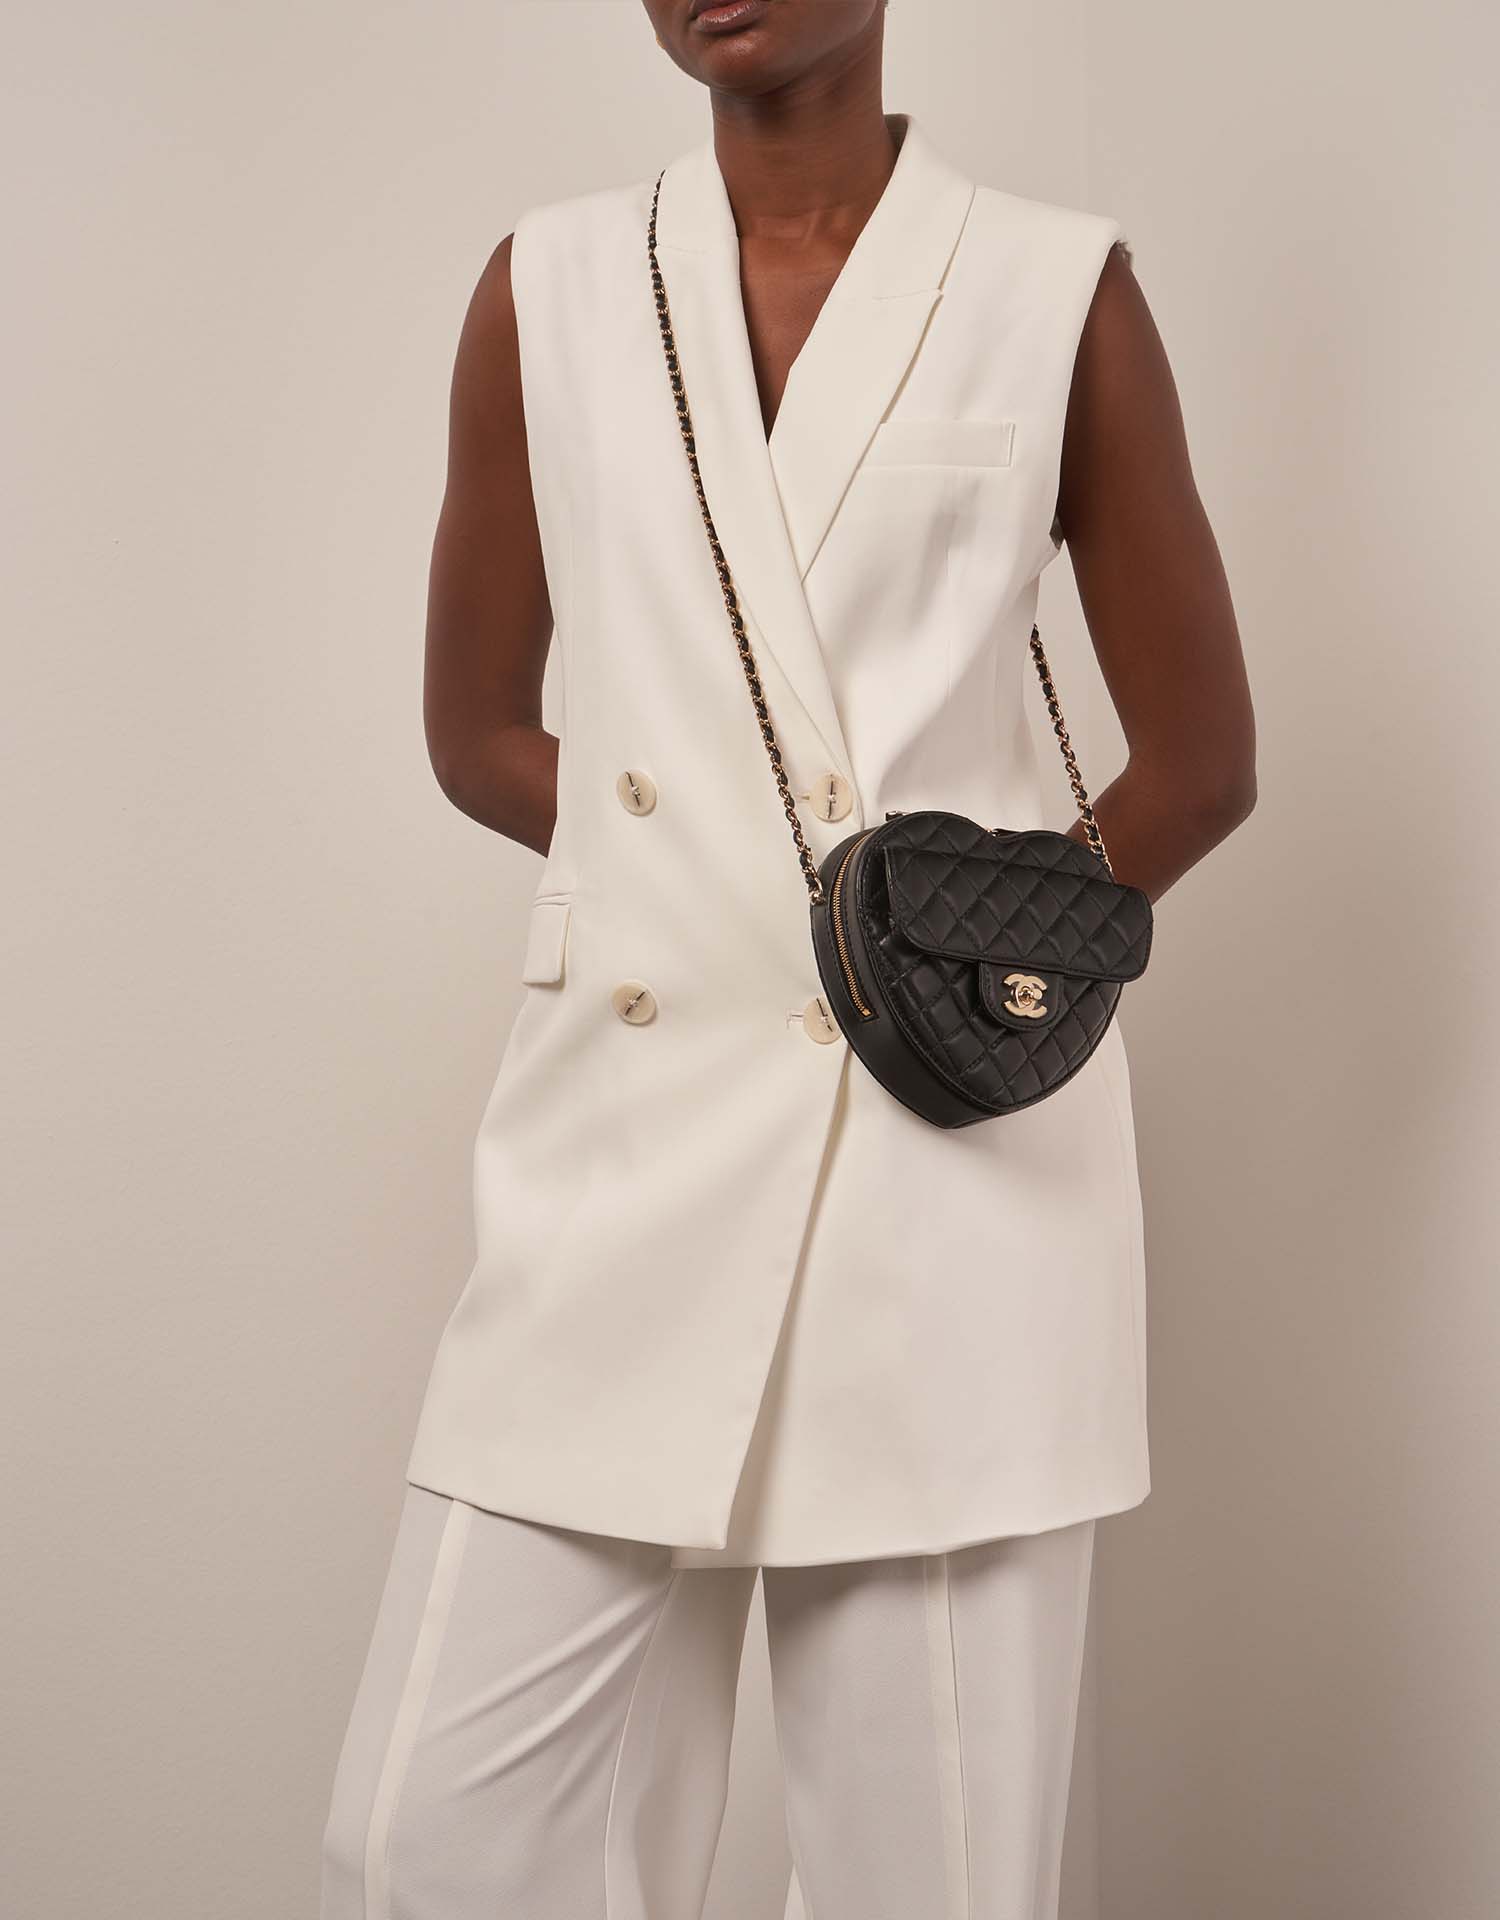 Chanel TimelessHeart Medium Schwarz auf Model | Verkaufen Sie Ihre Designer-Tasche auf Saclab.com